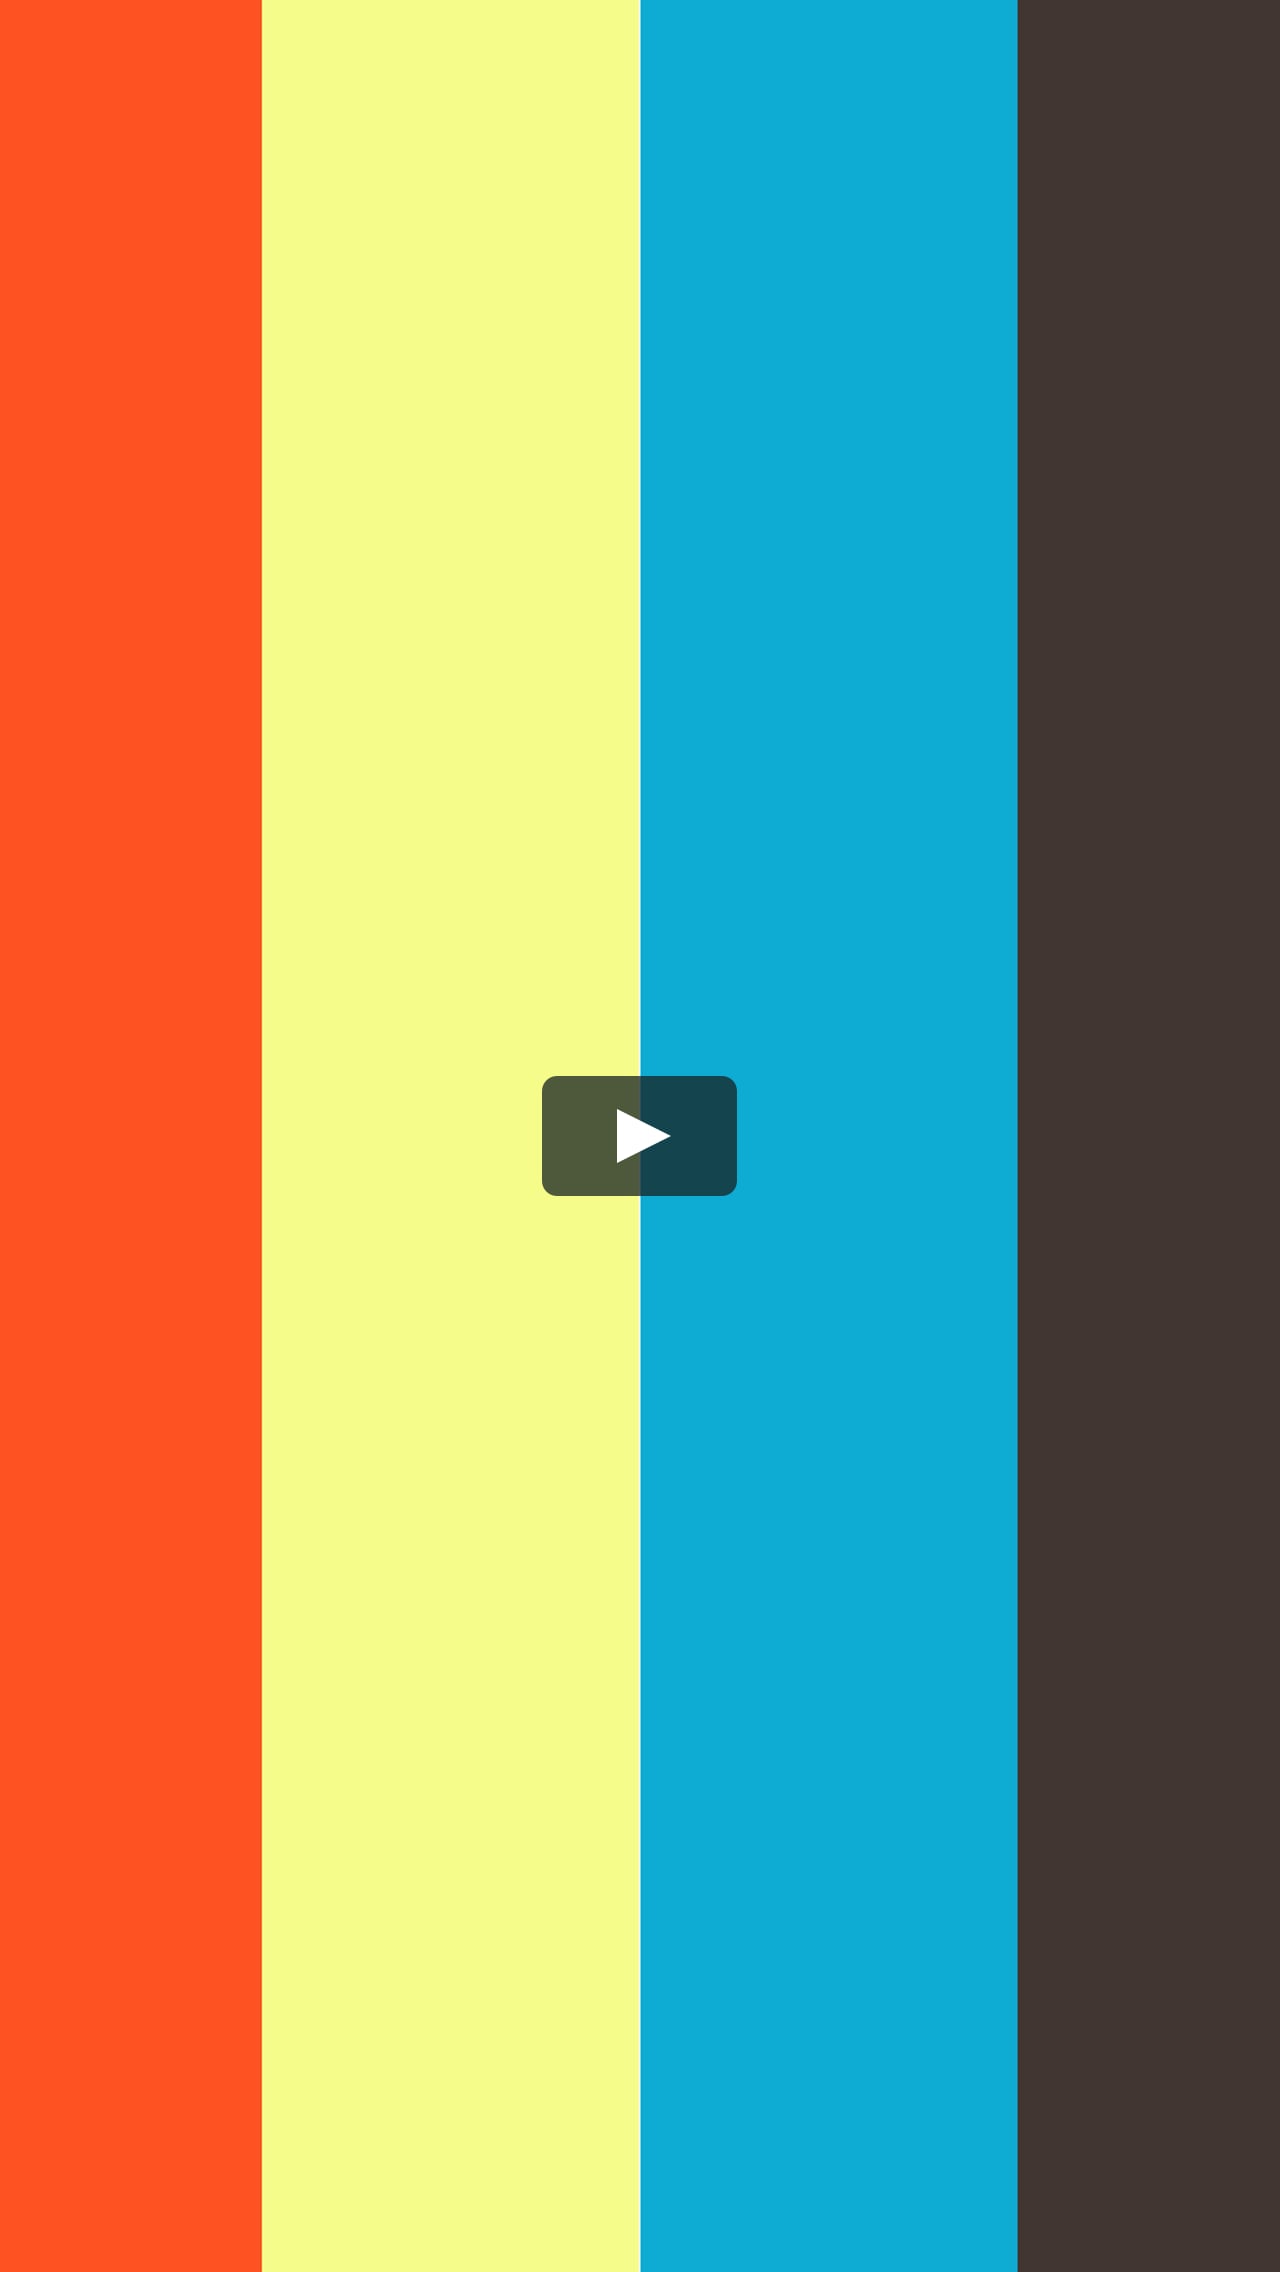 Shorts Arthur S Theme 絶対音感 を持つプロ ピアニスト が 即興アレンジ クリストファー クロス ニューヨークシティセレナーデ 横浜 Bmiストリートピアノ On Vimeo